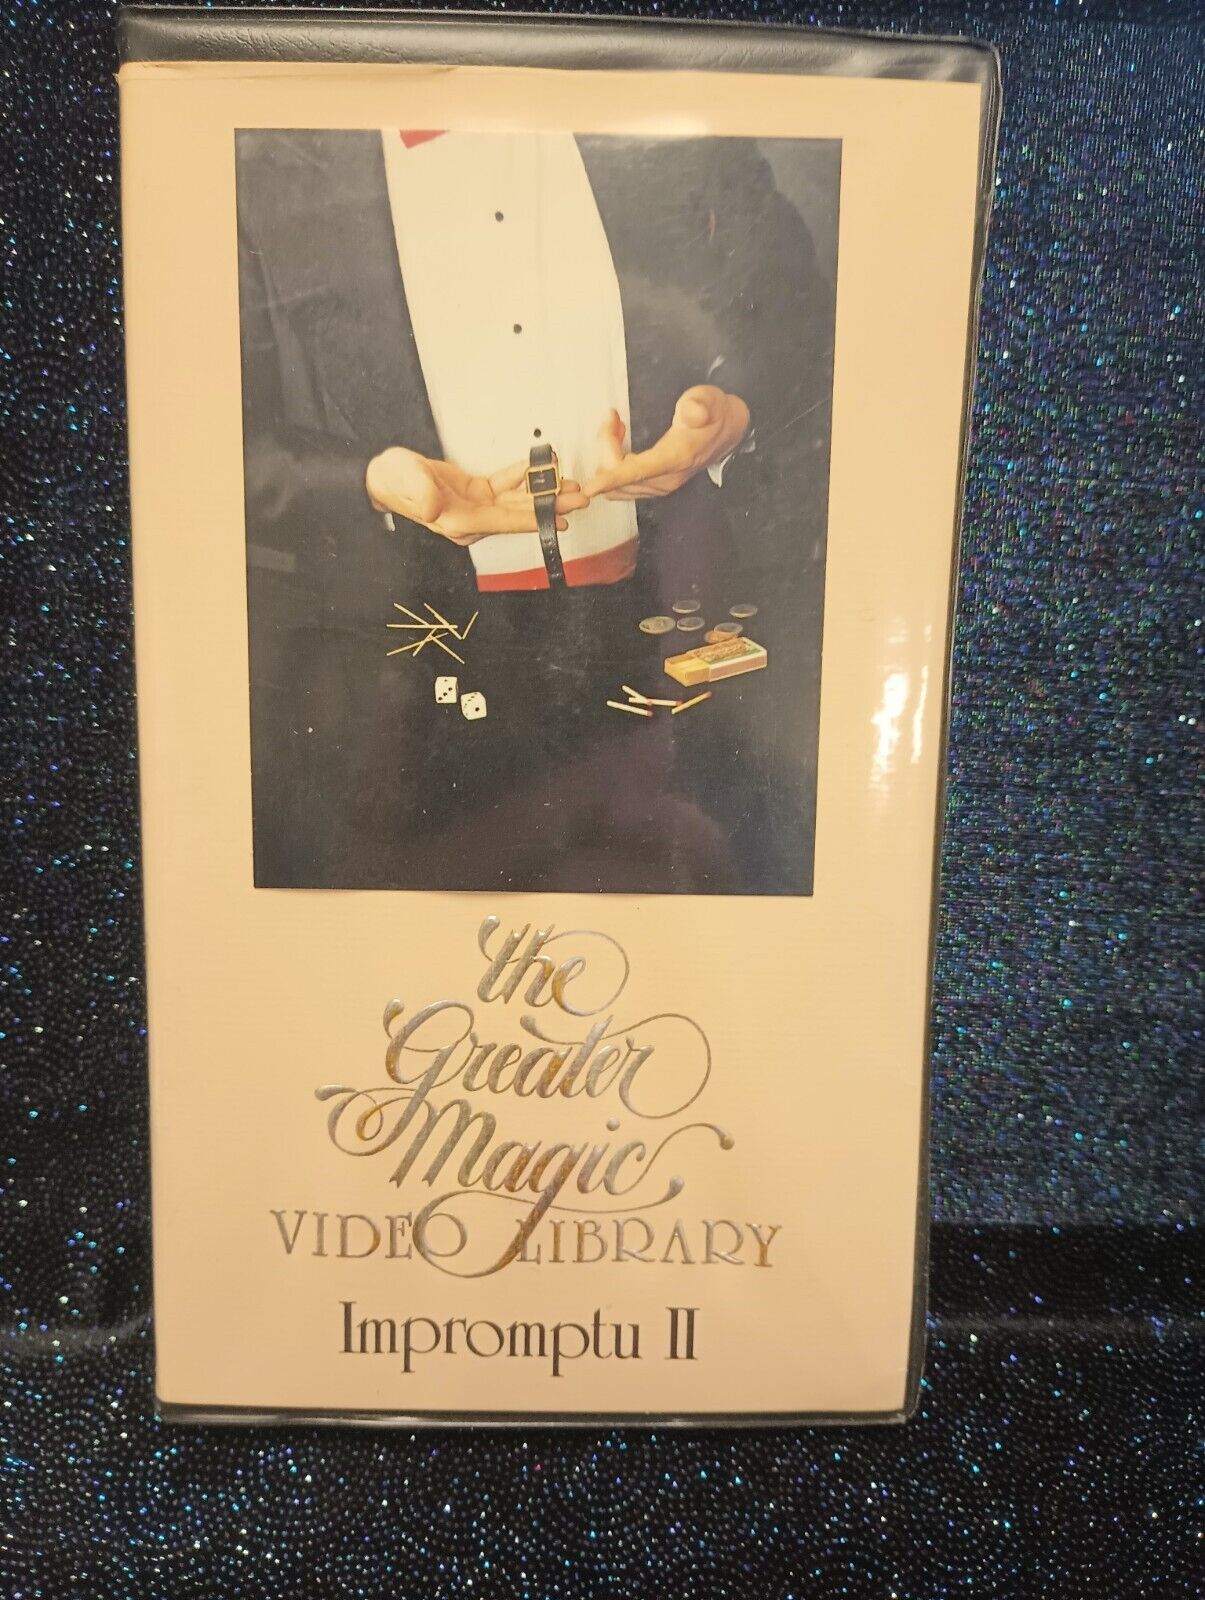 IMPROMPTU II - VHS Video Tape - GREATER MAGIC Volume 34